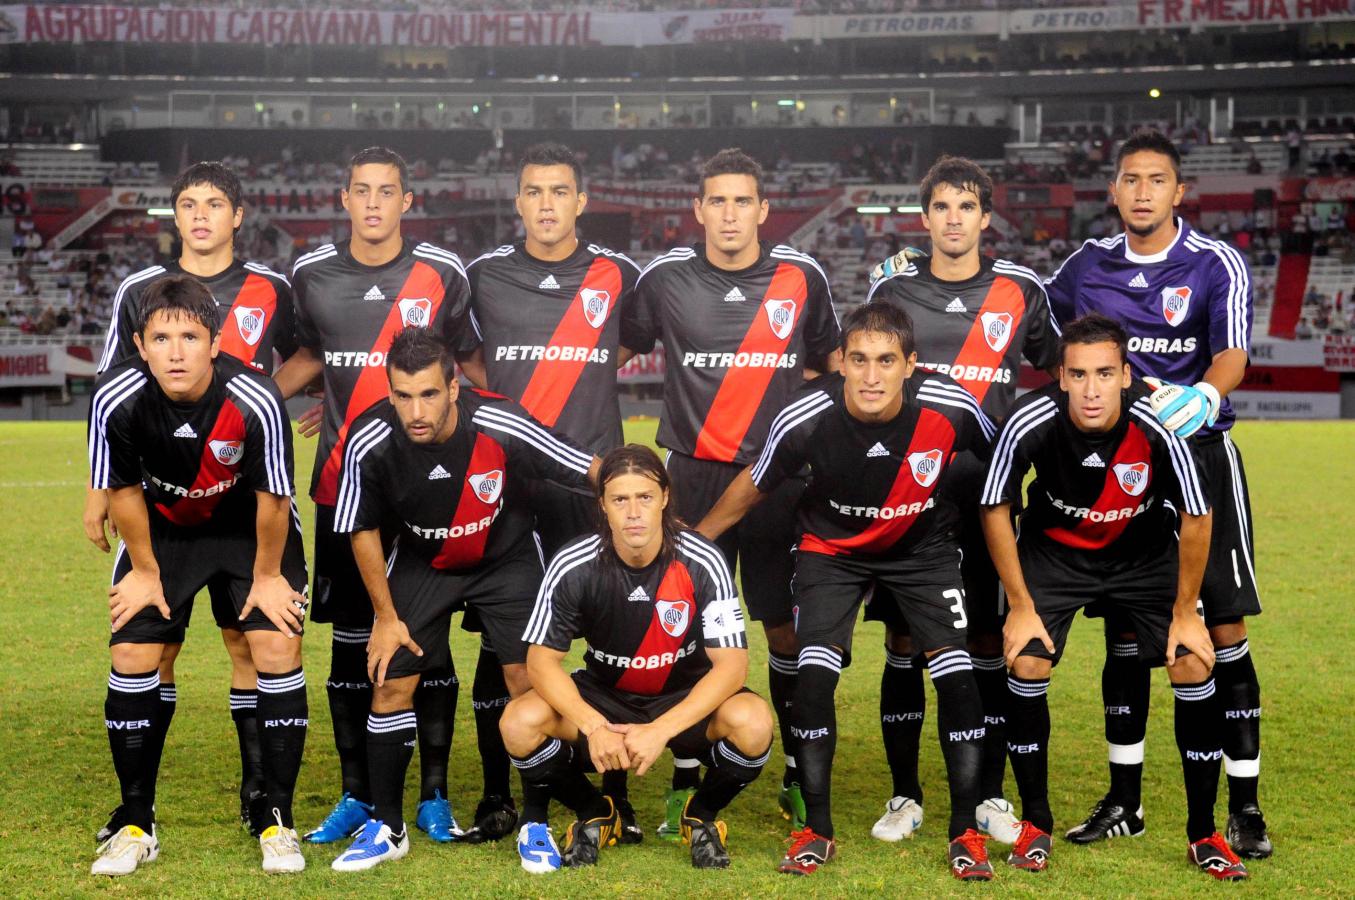 Imagen En el Clausura 2010, River sumó 12 puntos en 11 fechas con Astrada como DT (FOTOBAIRES)